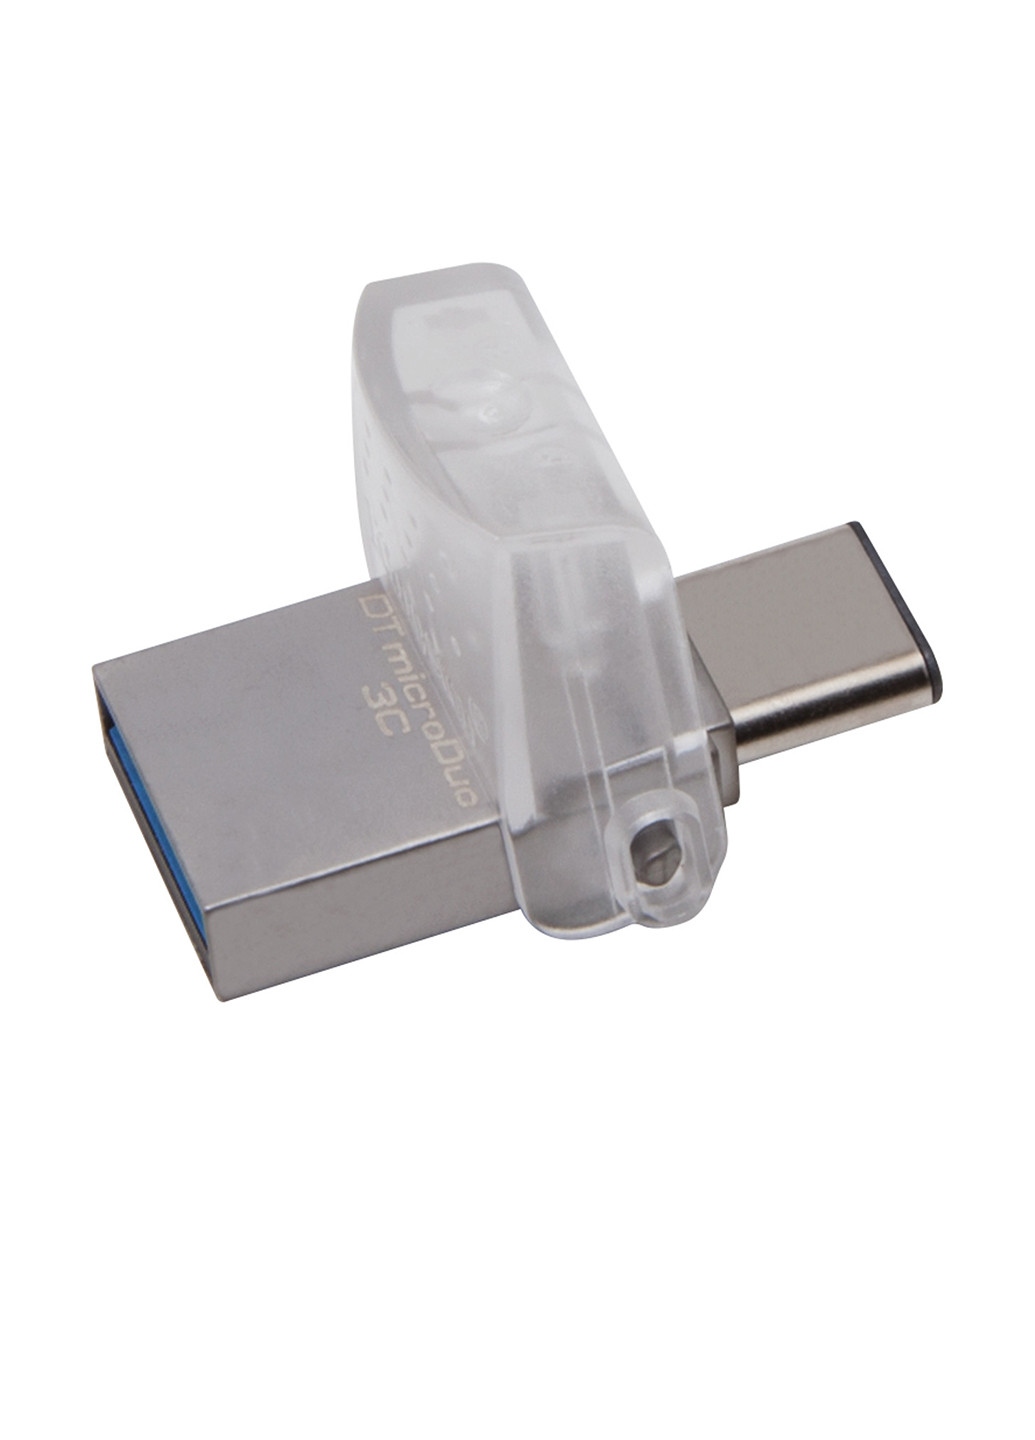 Флеш пам'ять USB DataTraveler microDuo 3C 32GB (DTDUO3C / 32GB) Kingston Флеш память USB Kingston DataTraveler microDuo 3C 32GB (DTDUO3C/32GB) сріблясті